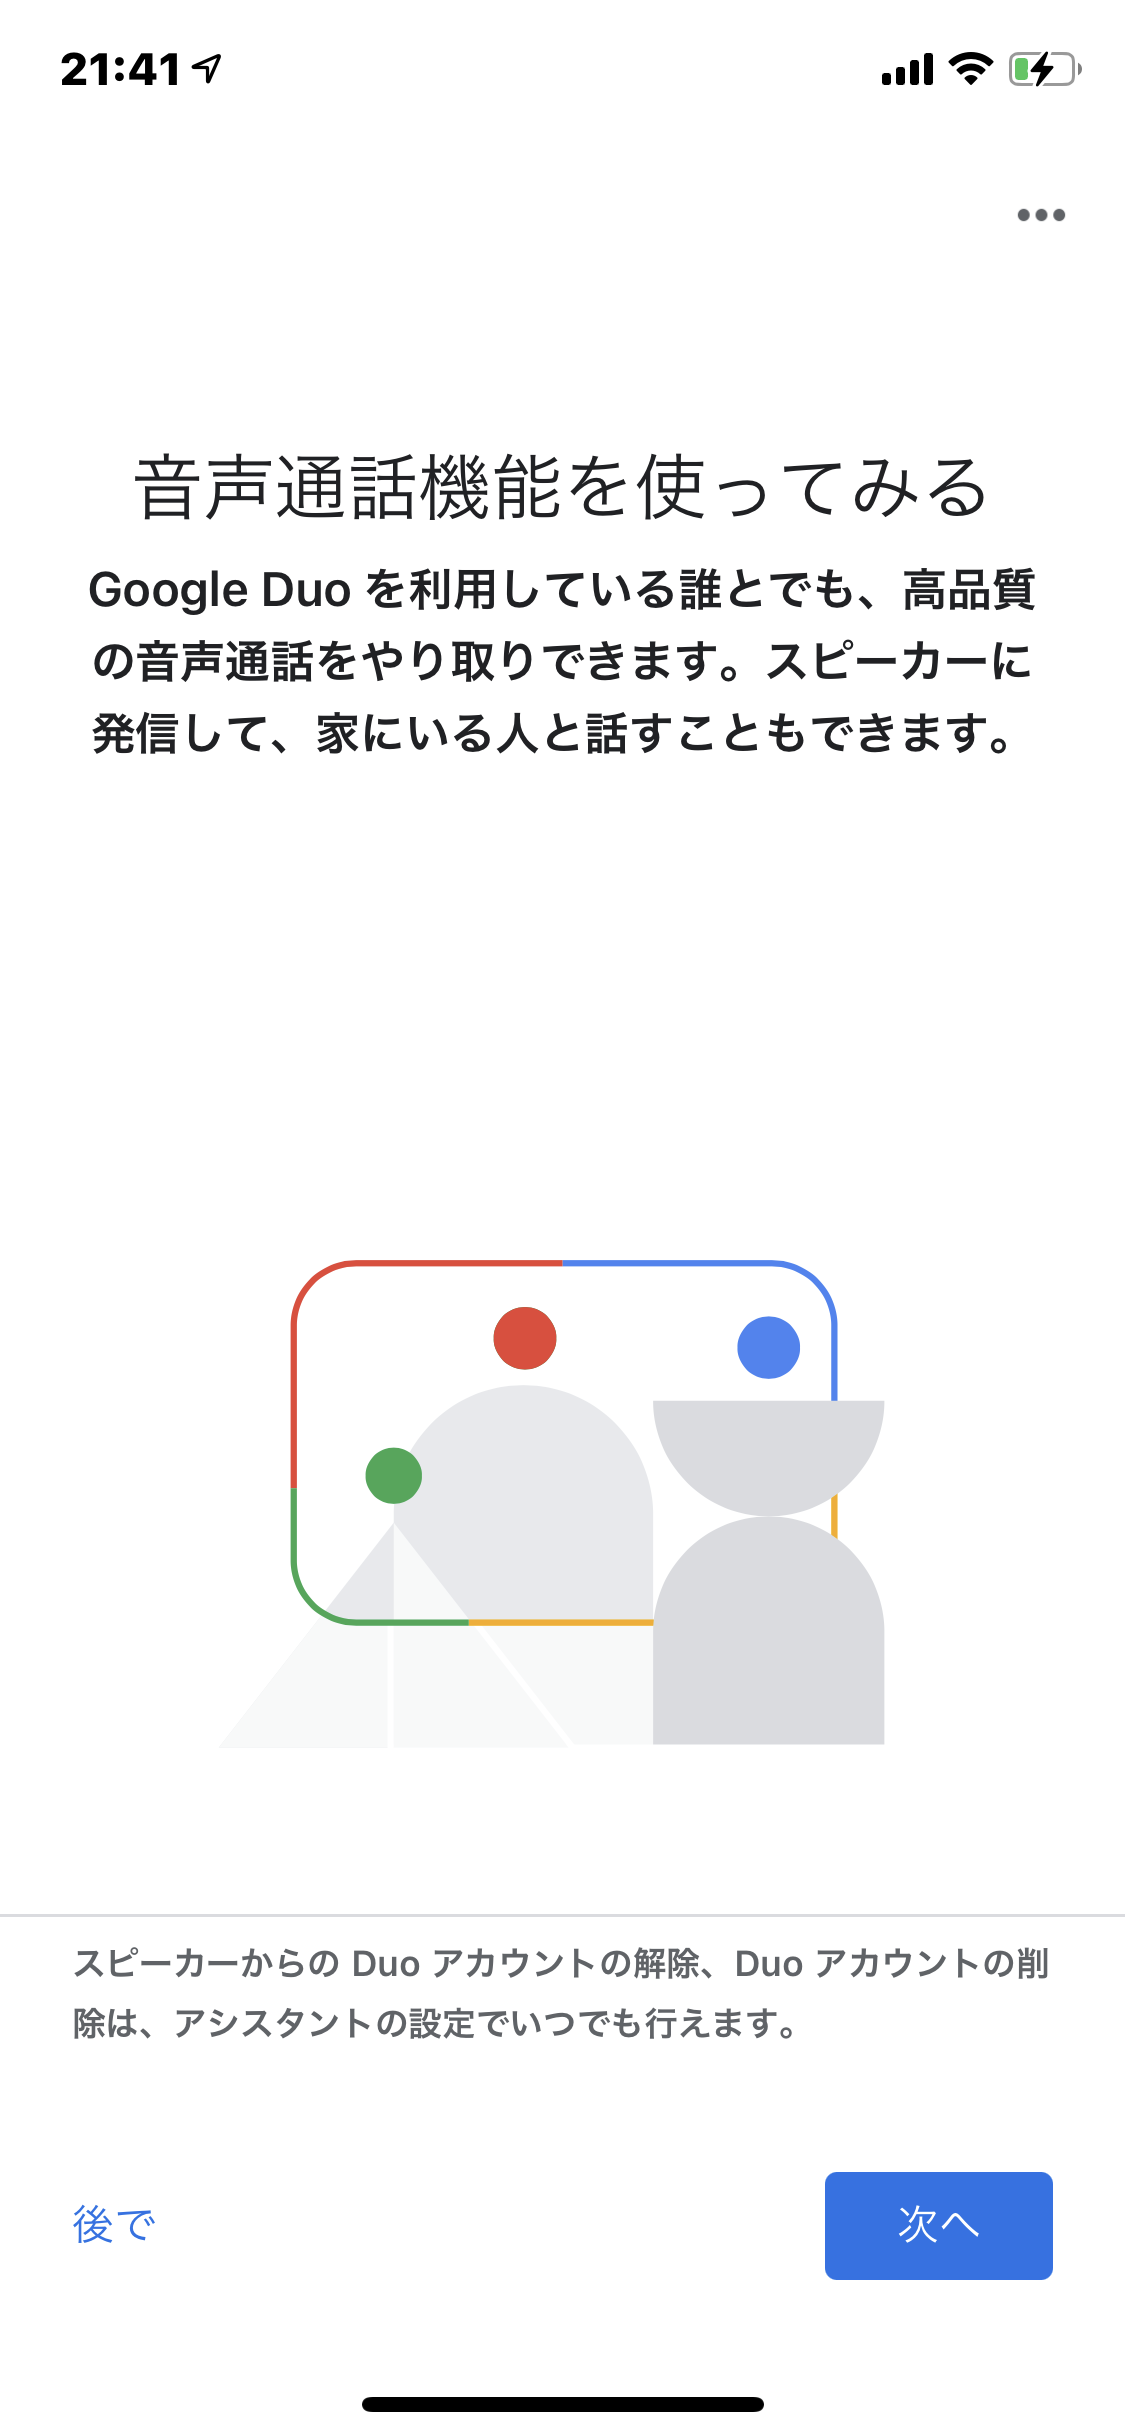 Google Nest Miniの設定方法